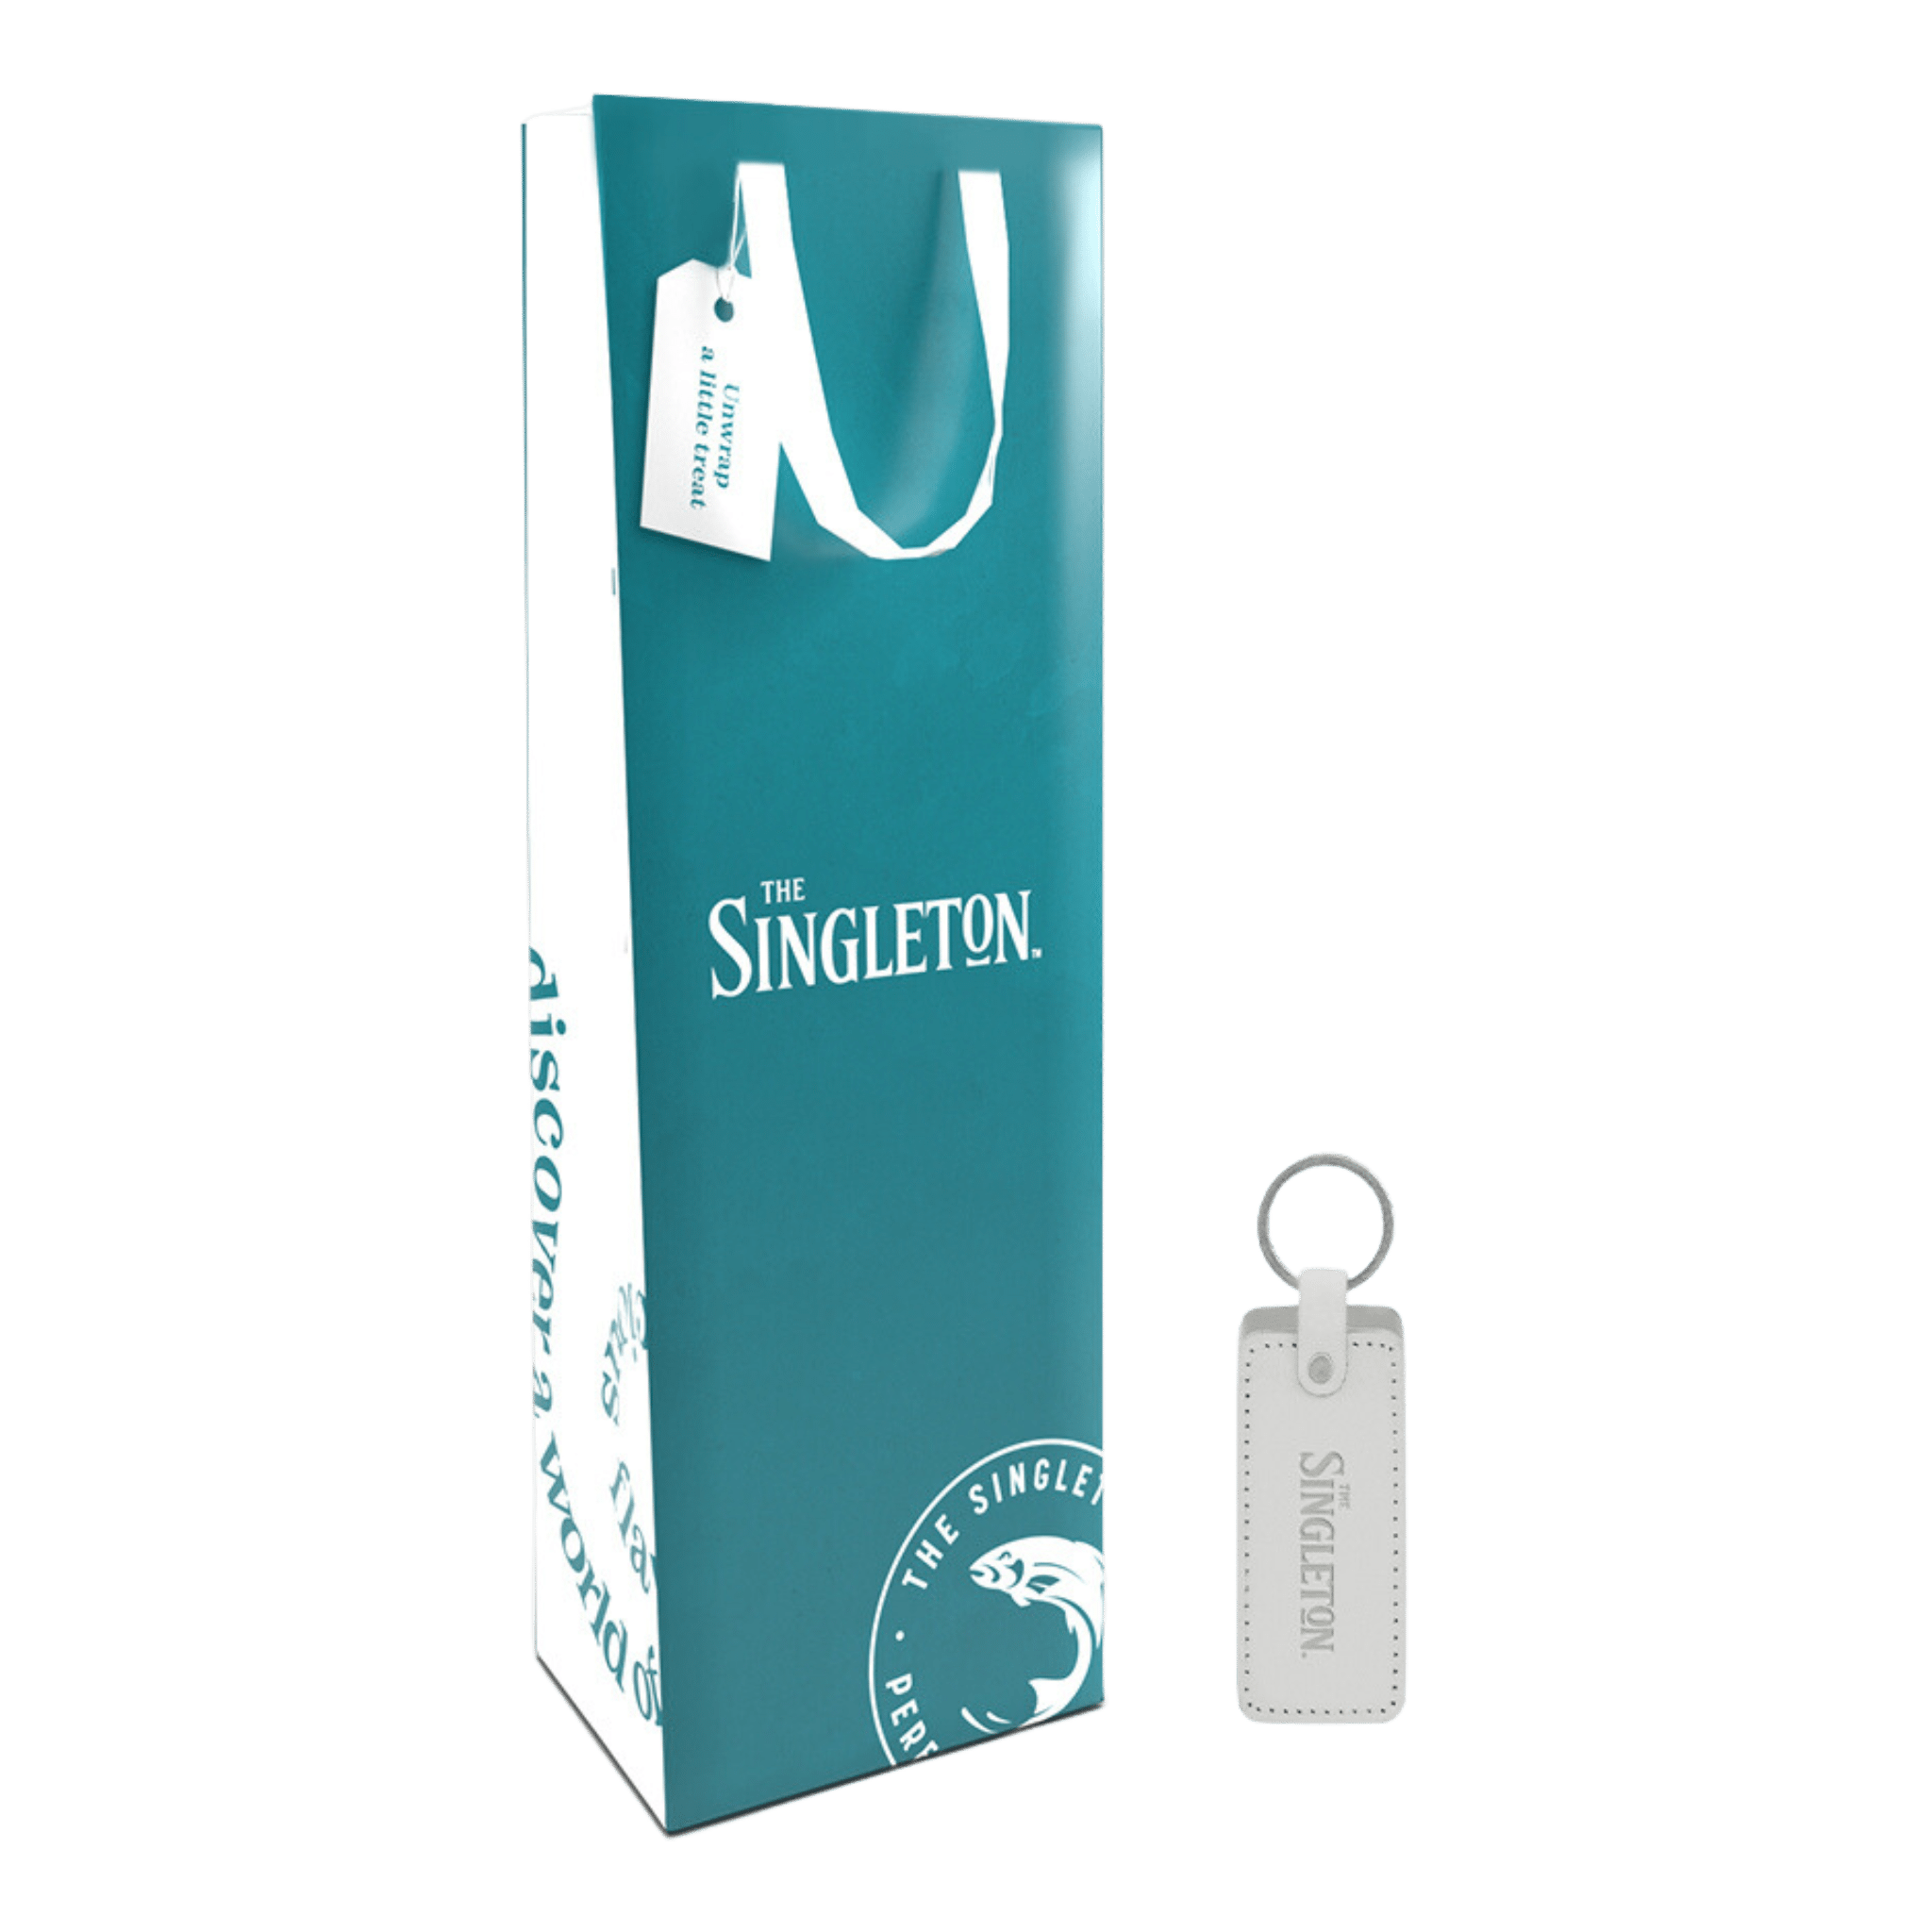 Singleton Gift Bag with Keychain (Freebie)